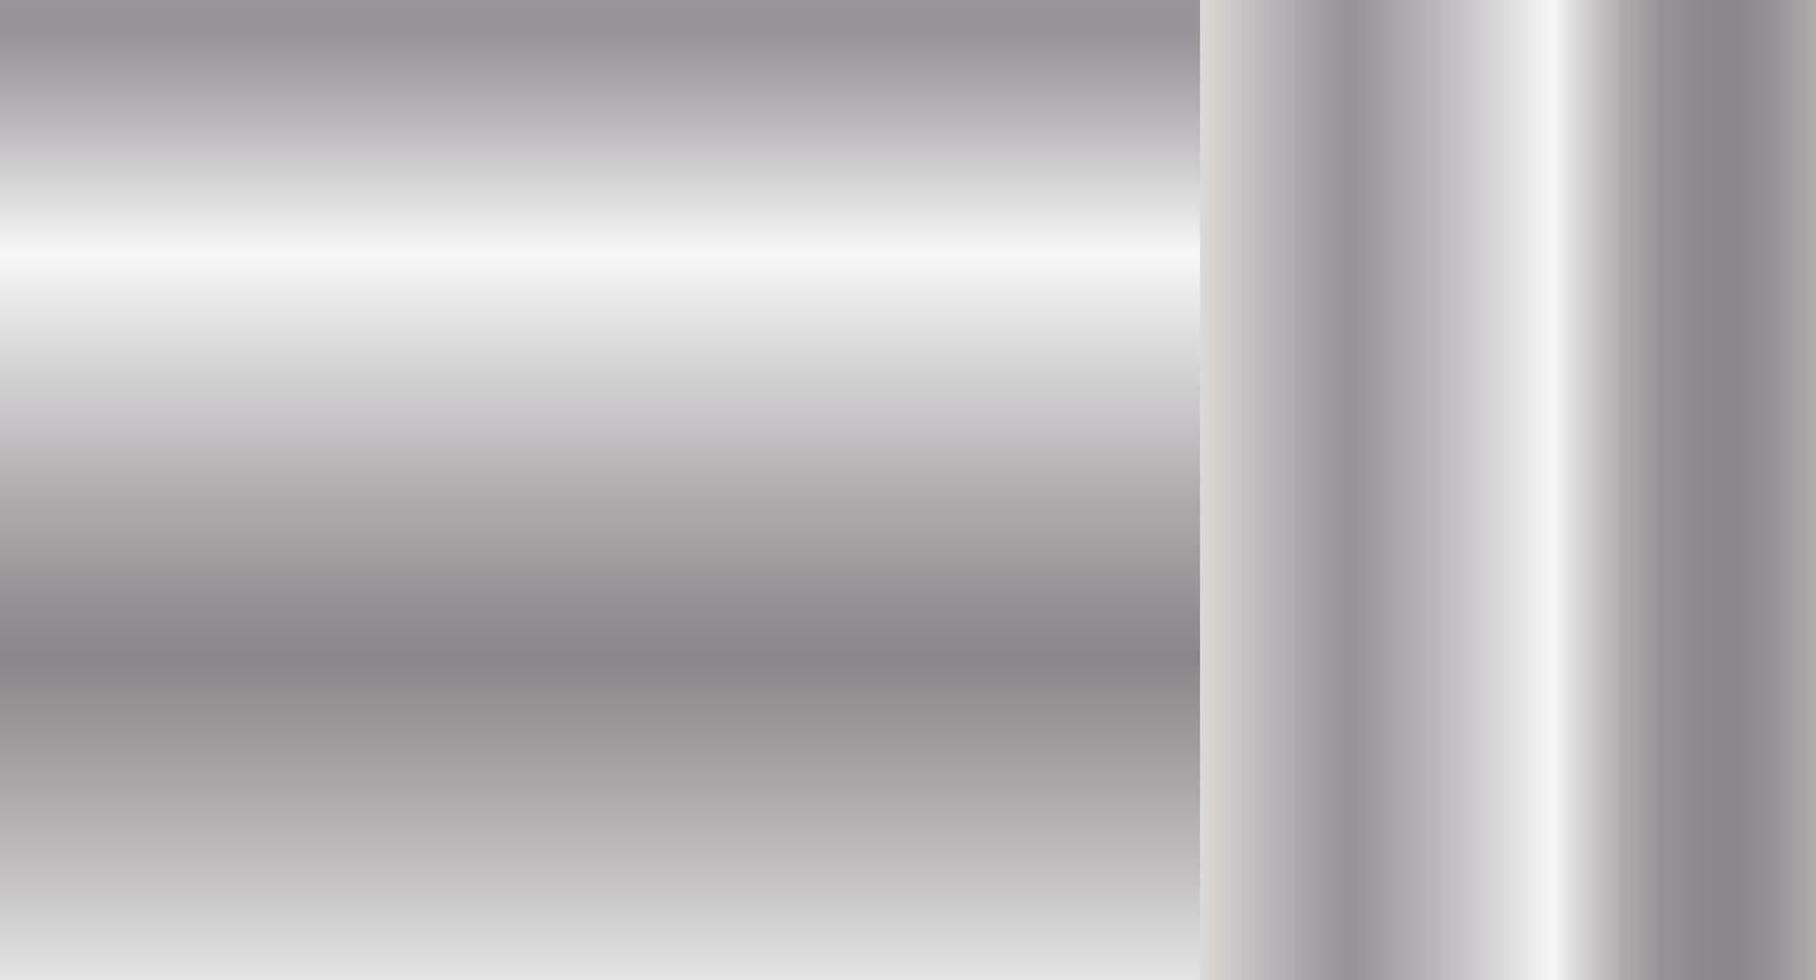 metallo struttura.metallica vuoto verticale e orizzontale pendenza modello.grigio decorazione.vettore brillante e metallo acciaio pendenza modello per cromo confine, ferro telaio, etichetta disegno.vettore illustrazione vettore